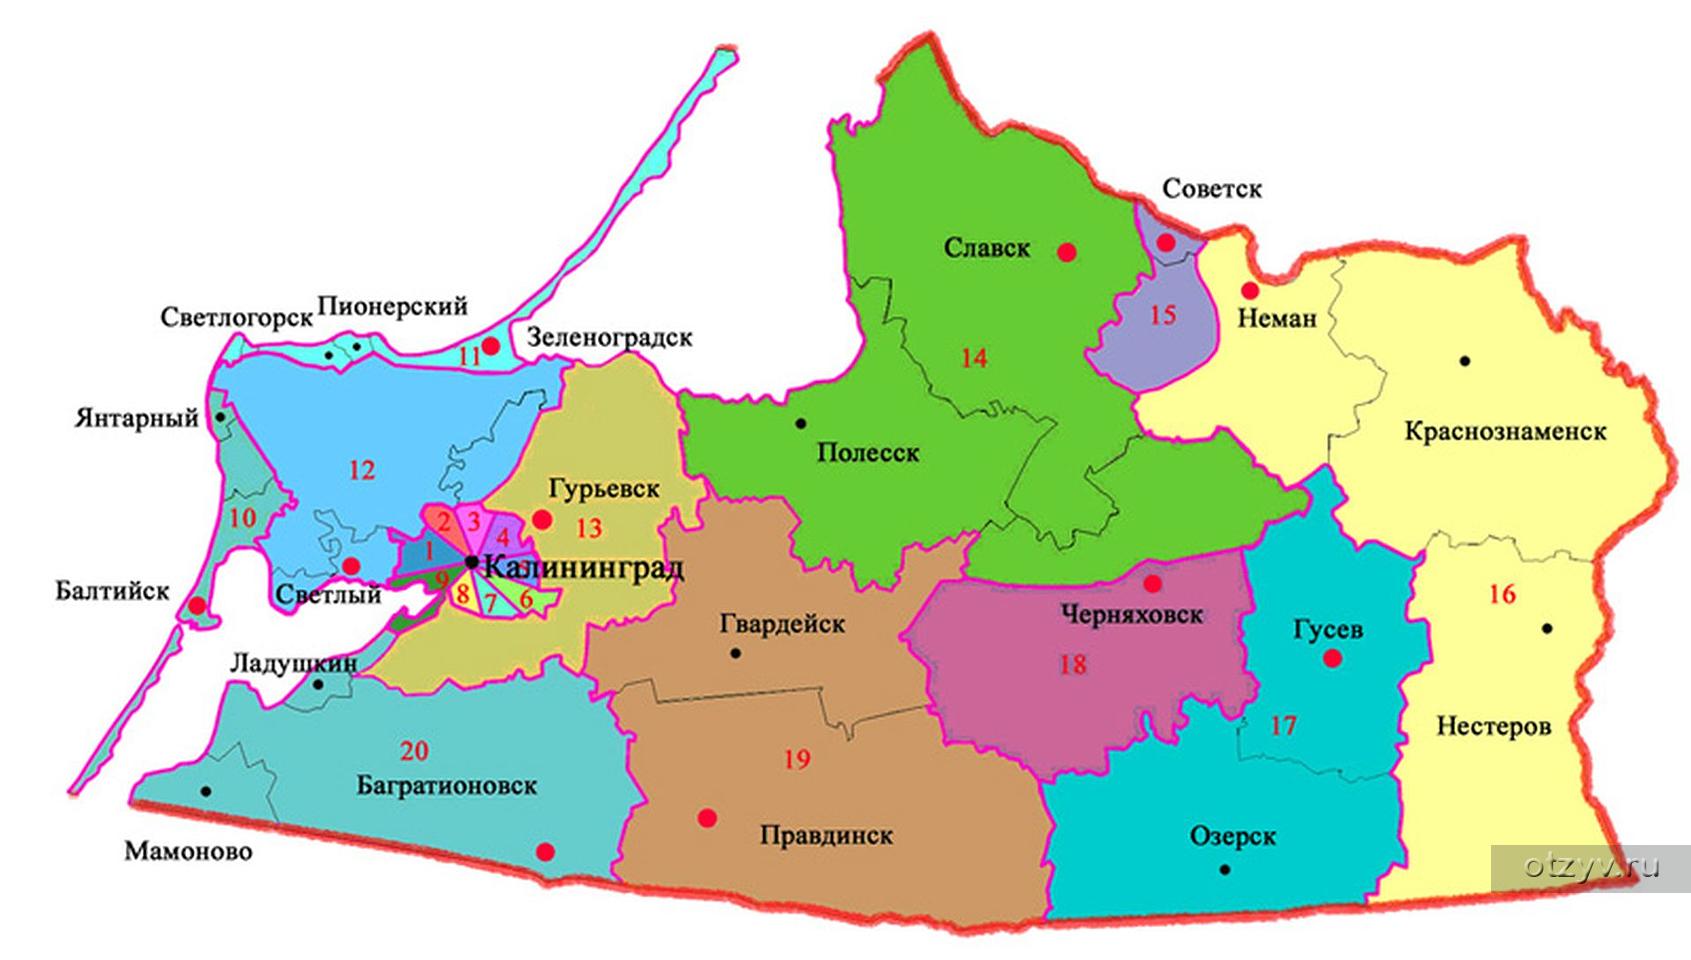 Автономные учреждения калининградской области